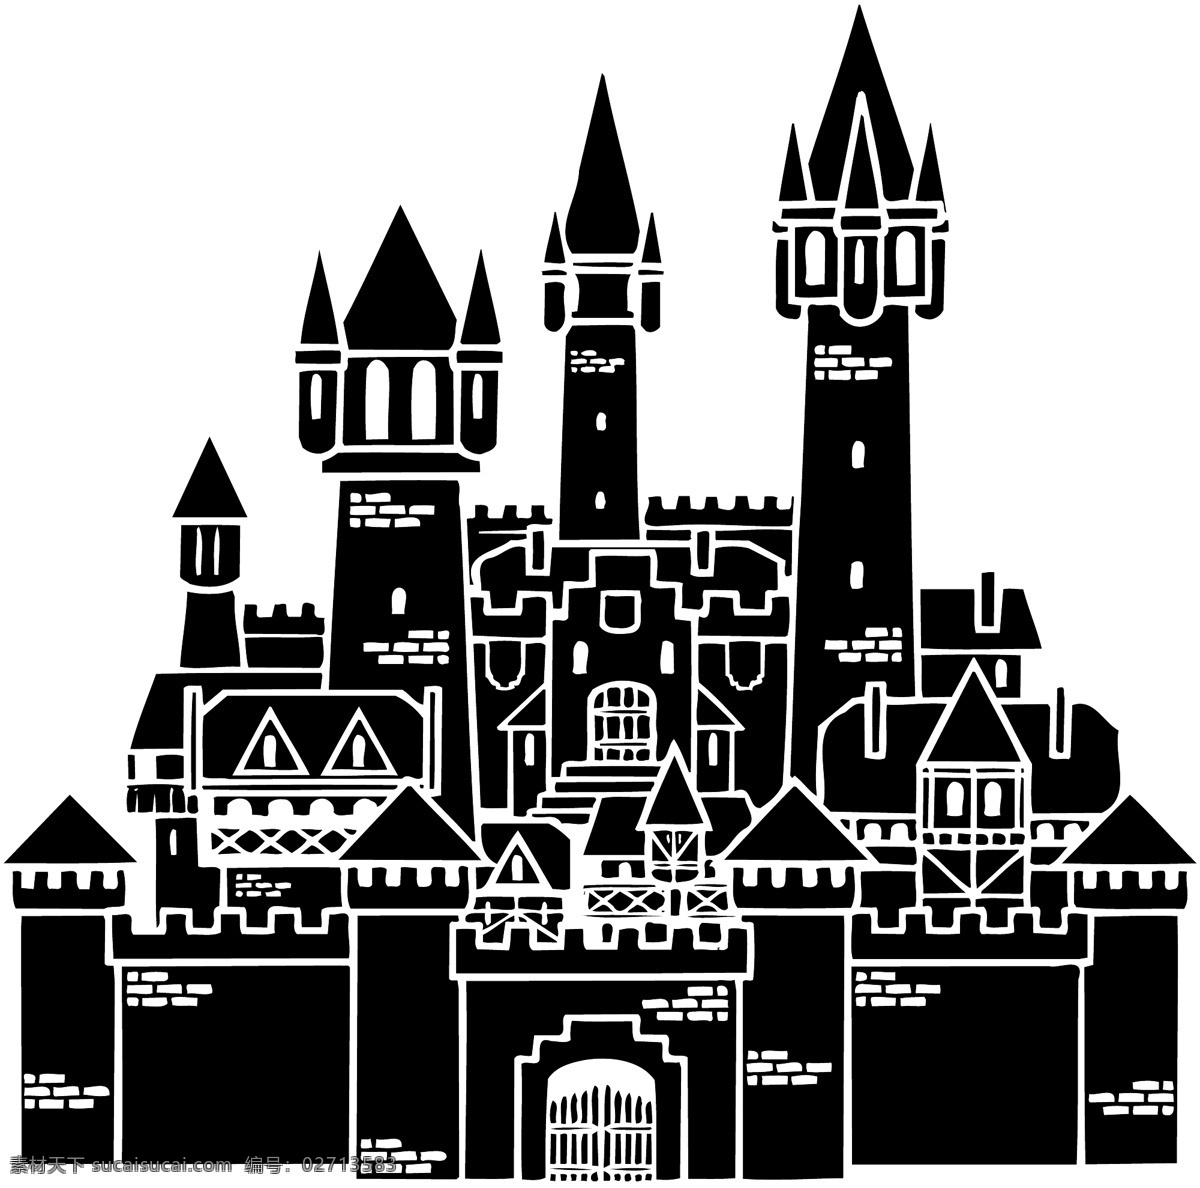 城堡建筑 矢量素材 格式 eps格式 设计素材 矢量建筑 风景建筑 矢量图库 白色